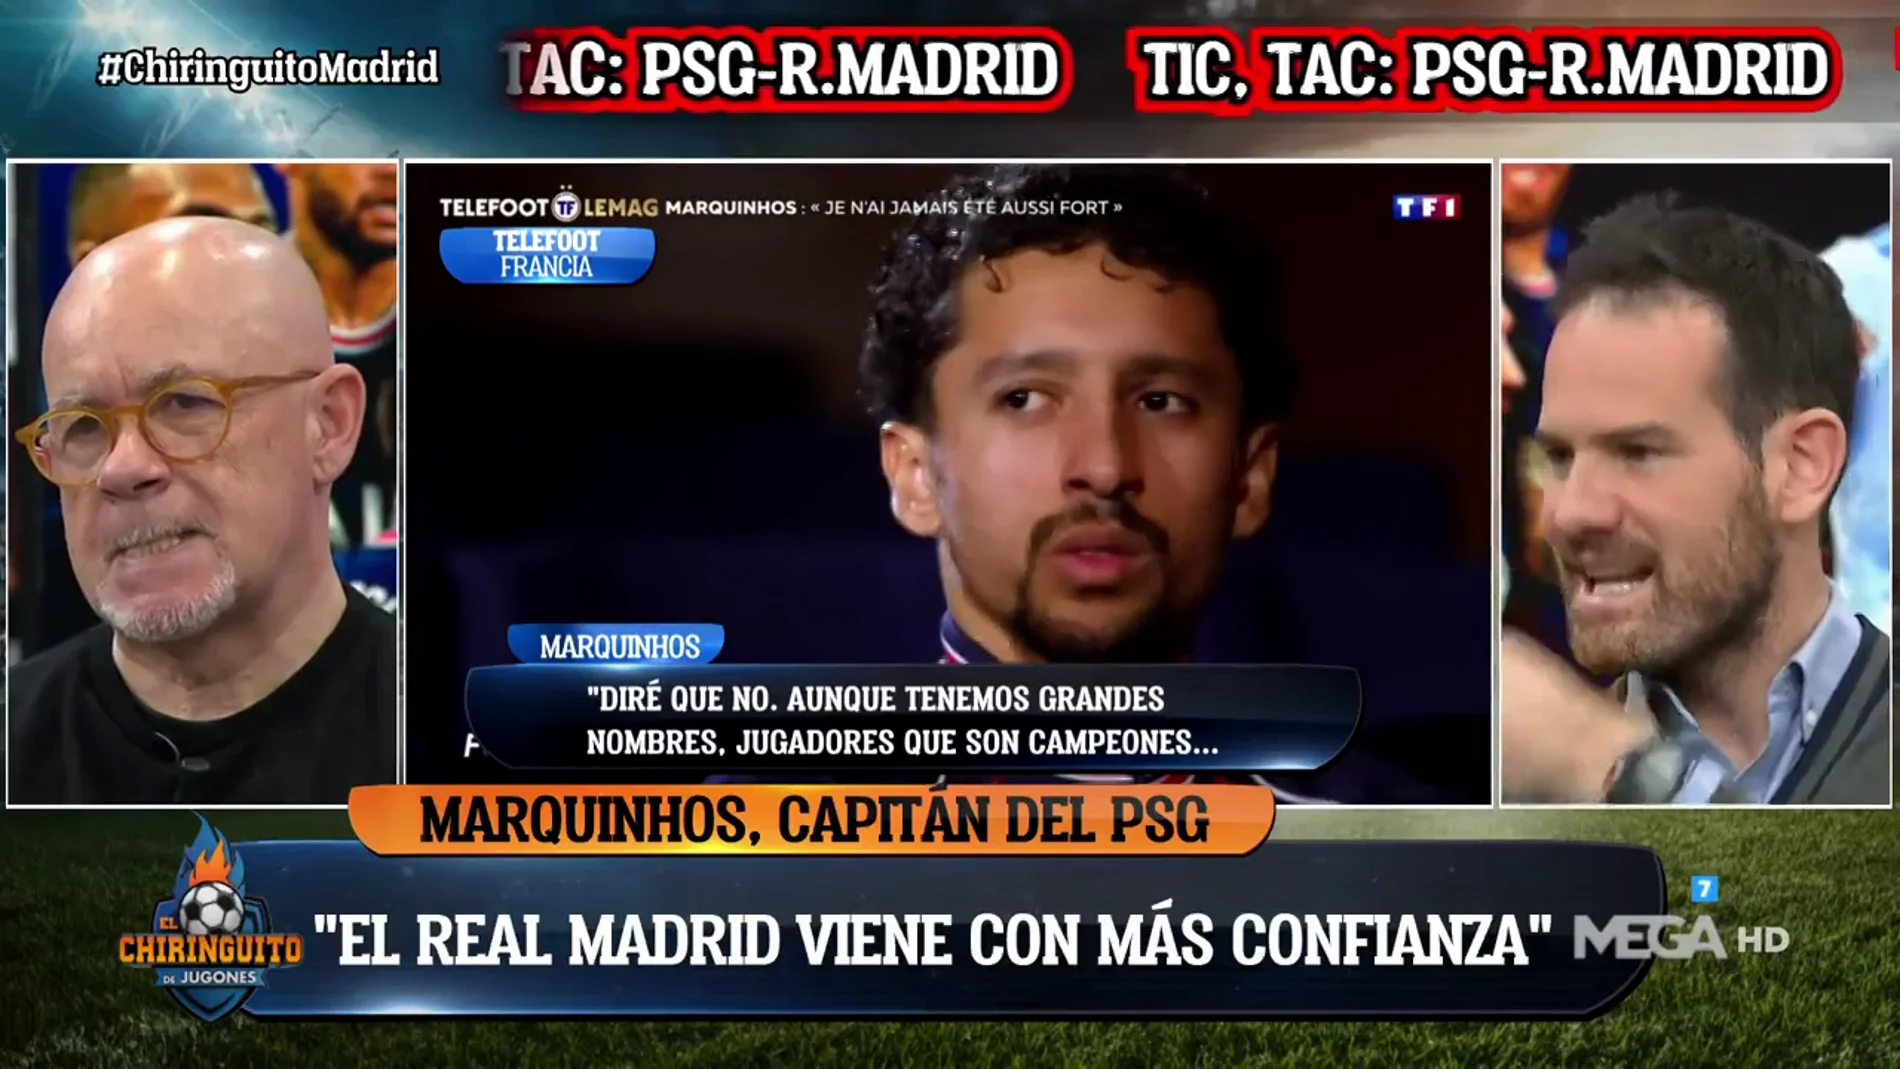 Quim Domènech: "El PSG tiene más presión que el Madrid"